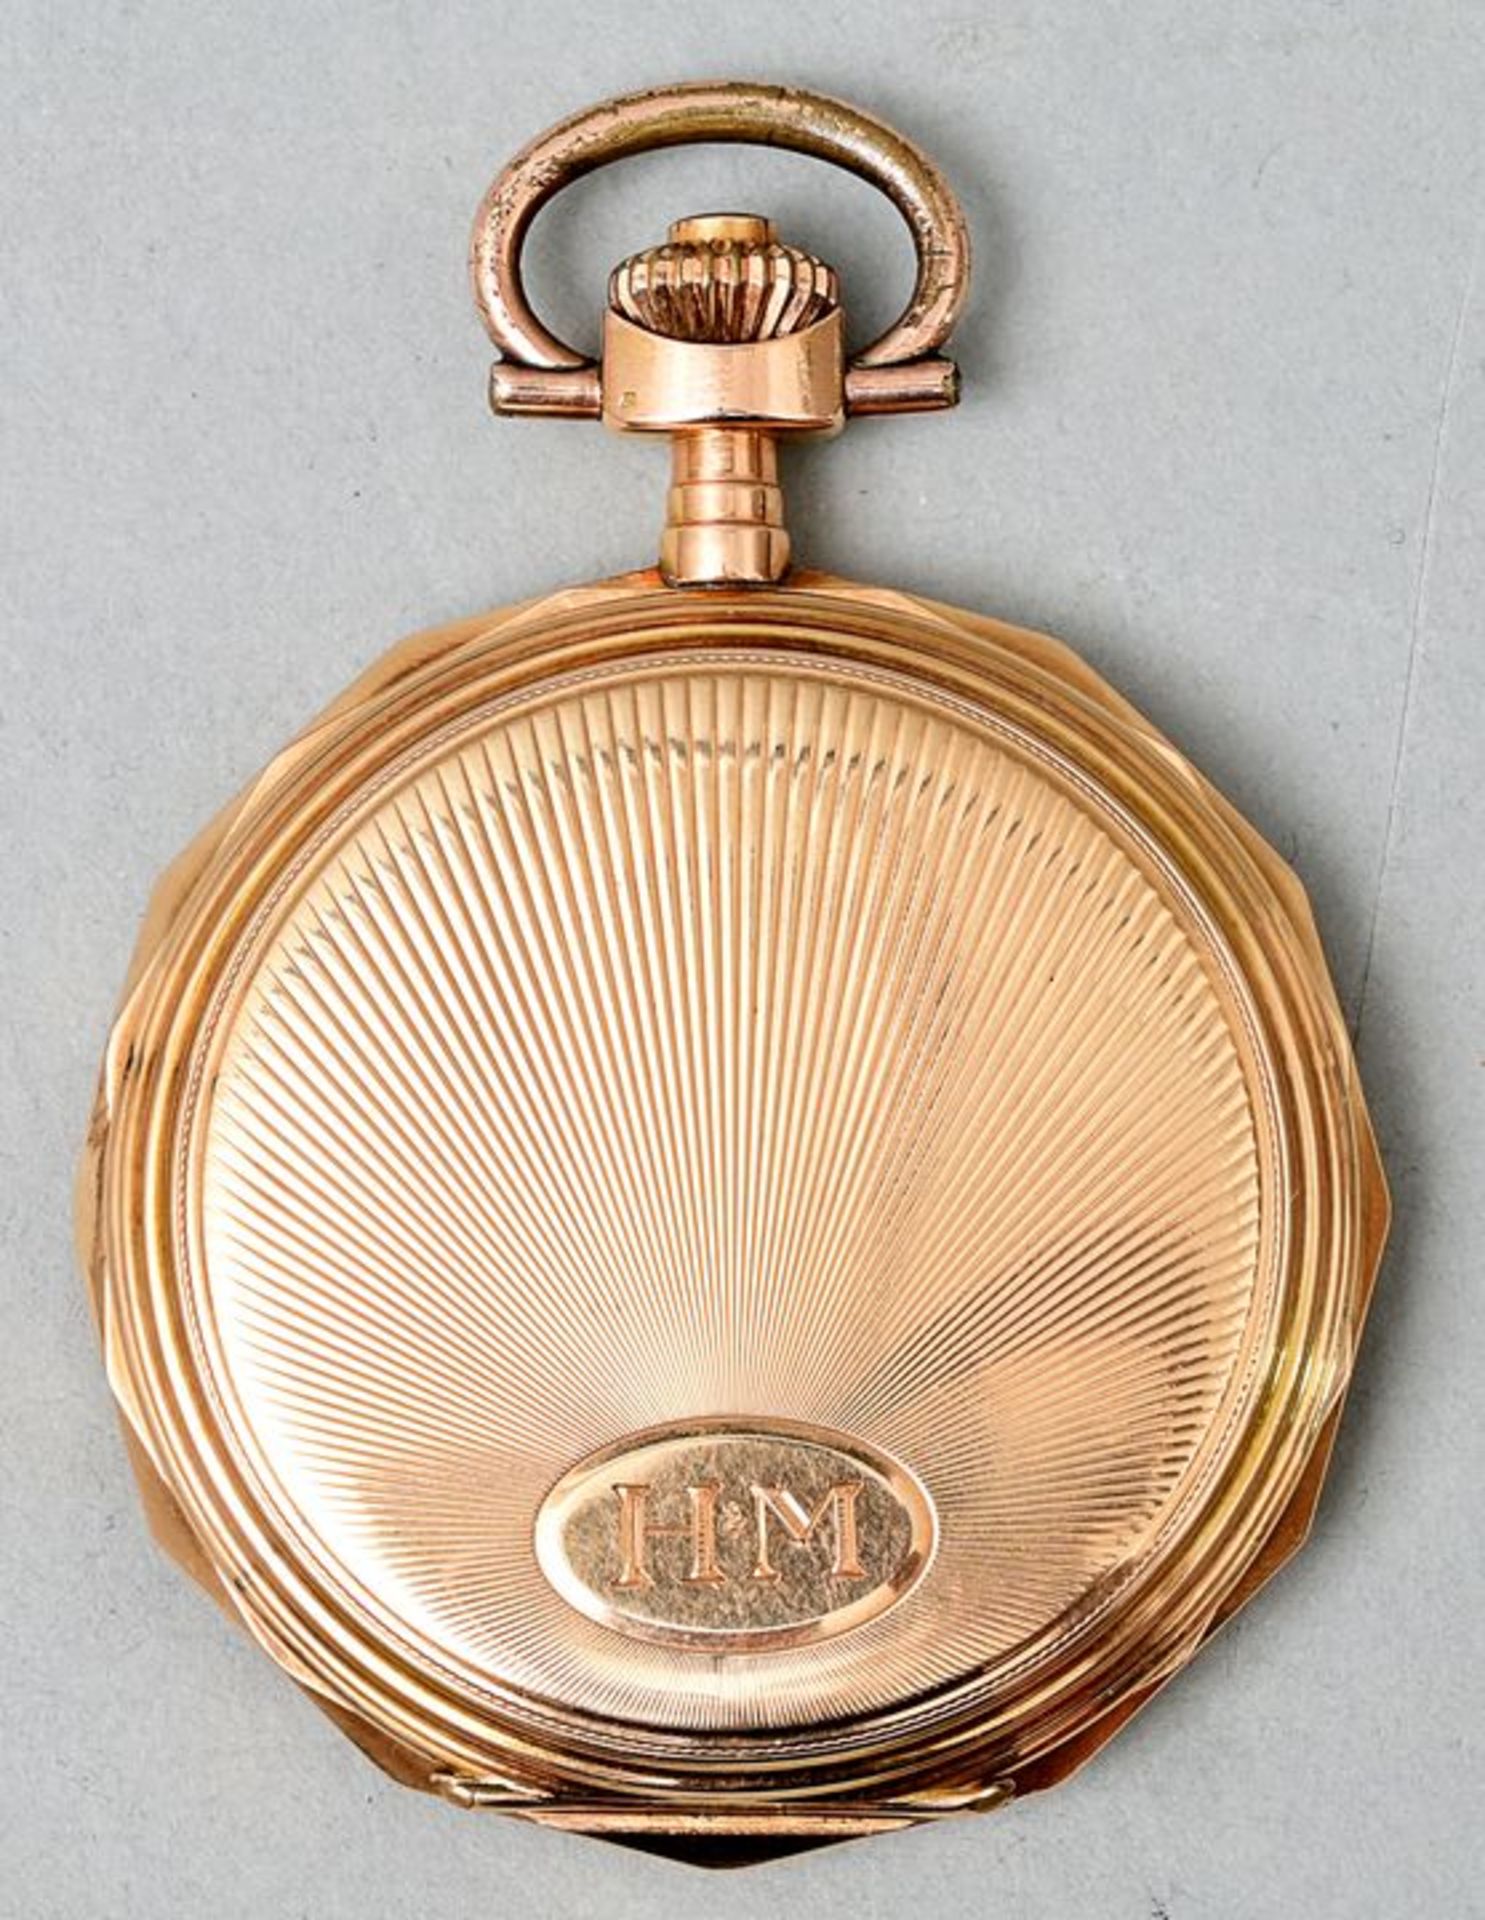 Goldene Taschenuhr/ golden pocket watch - Bild 3 aus 5